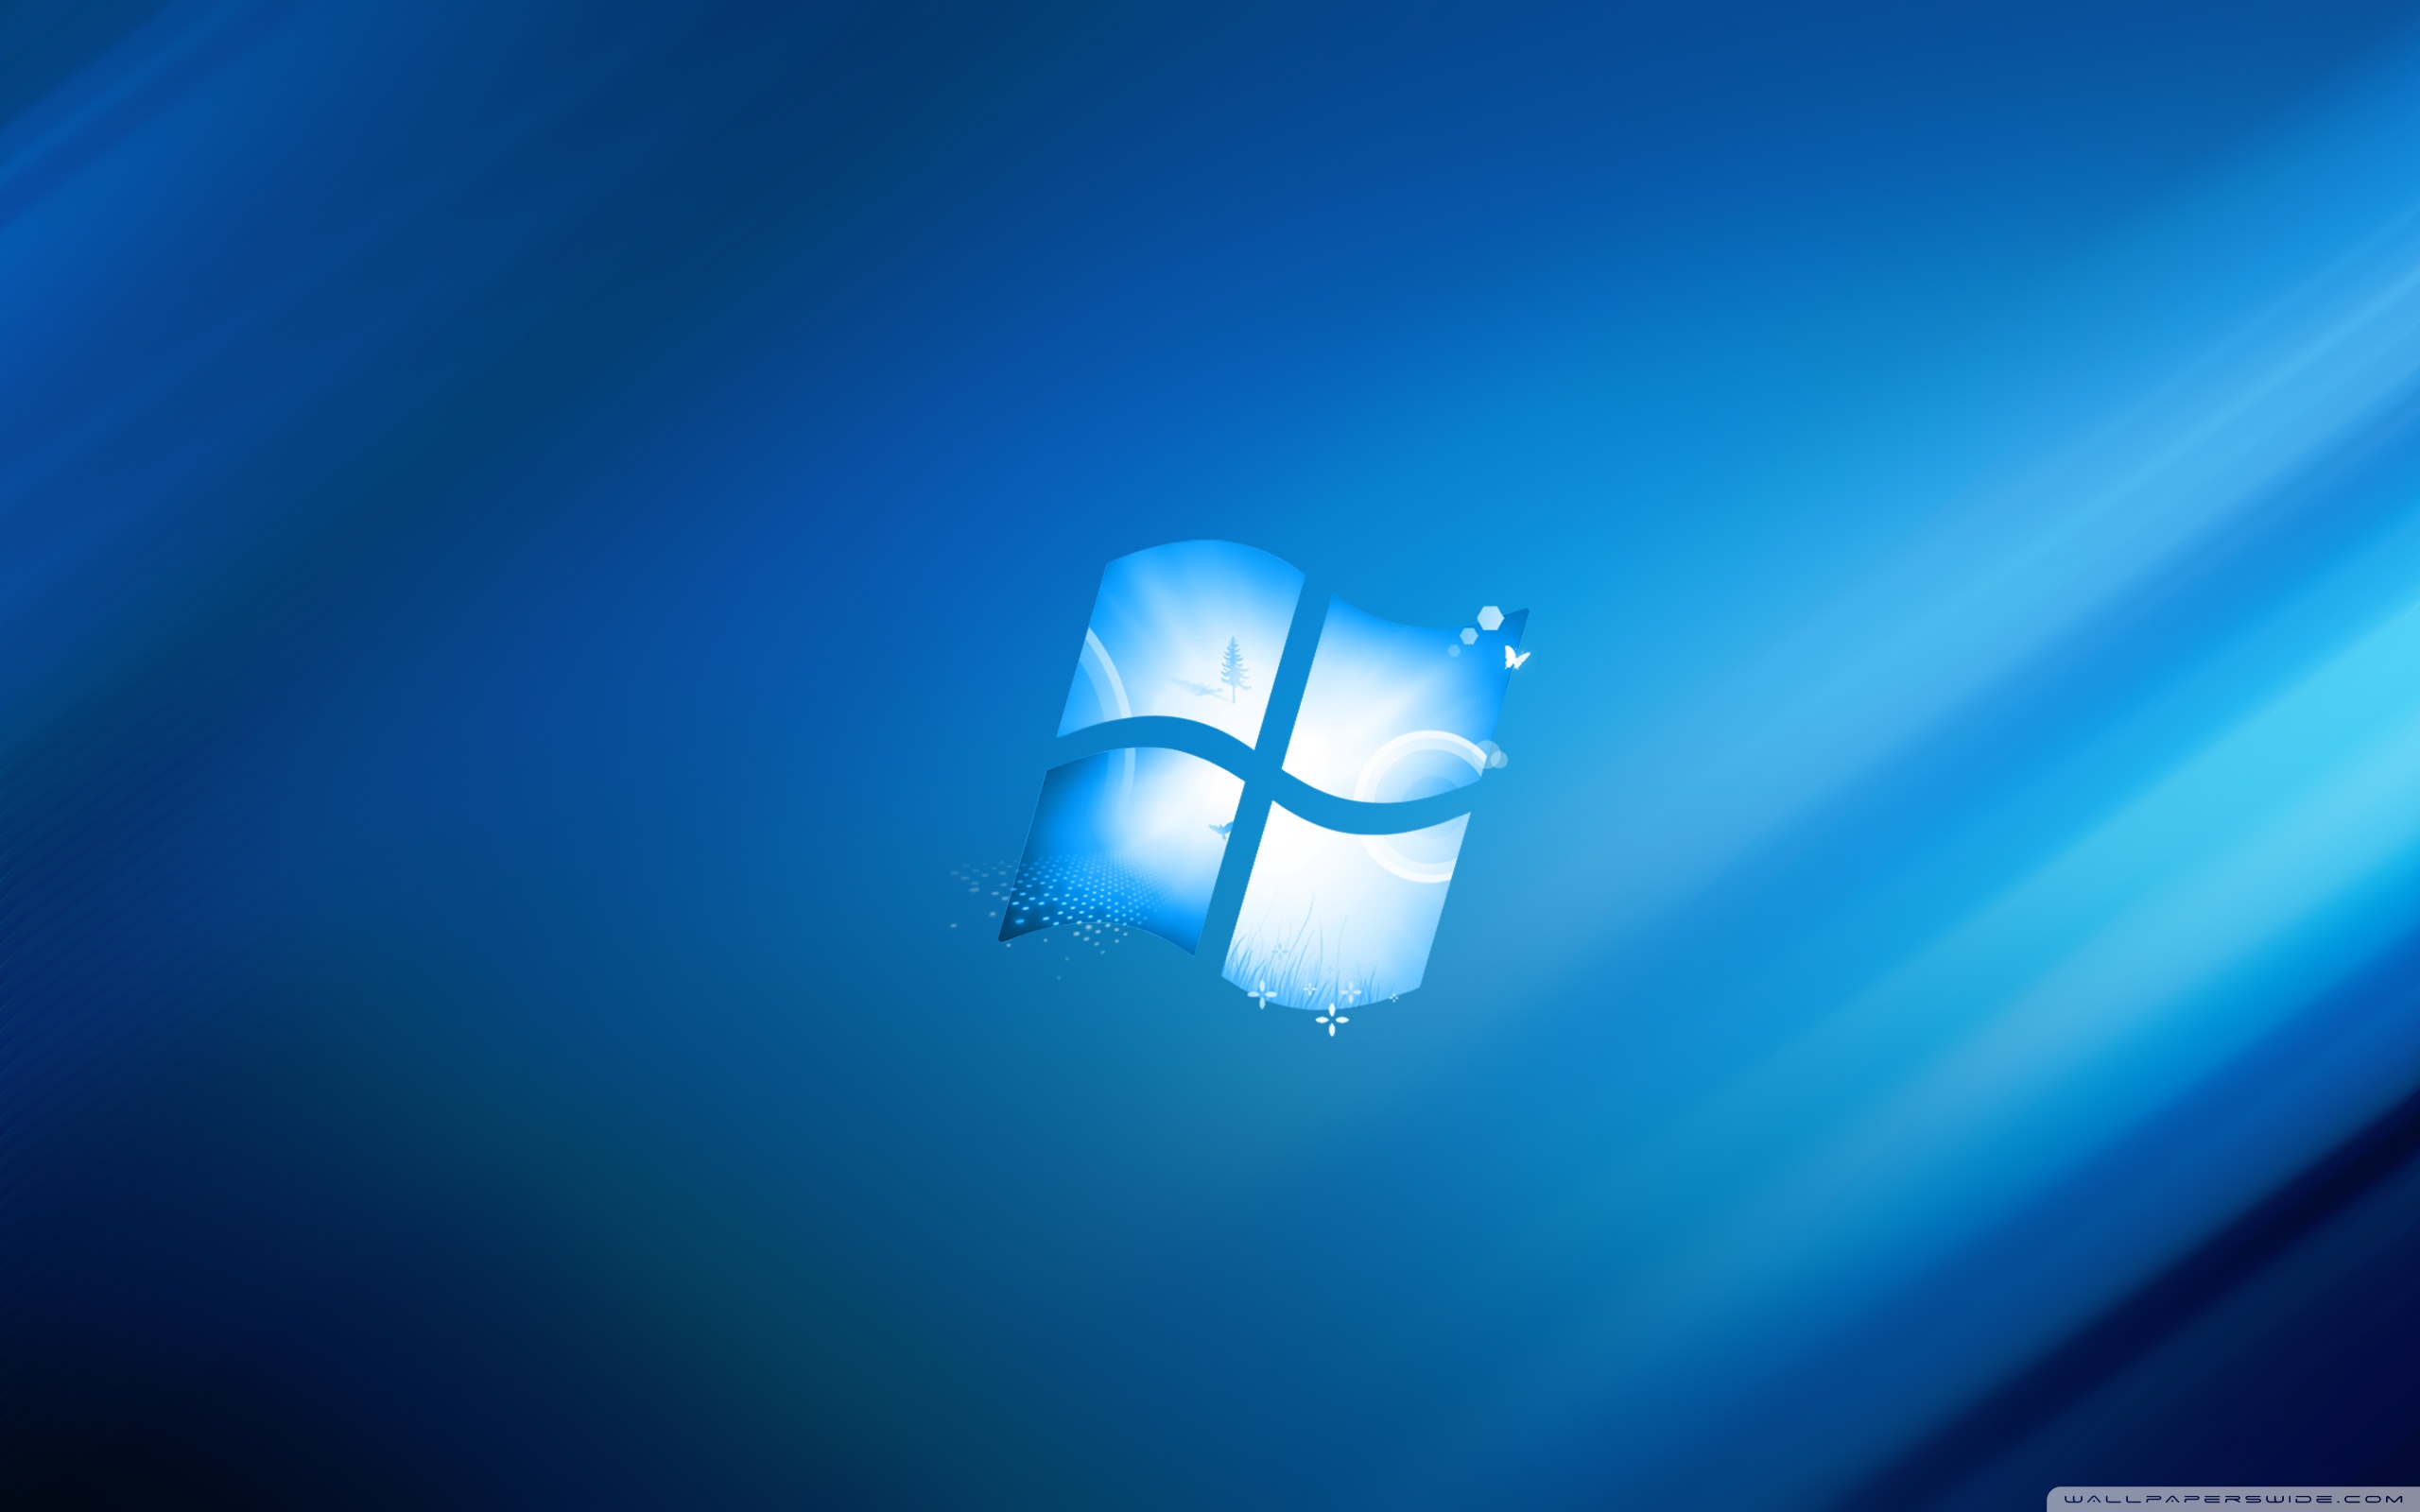 Tải miễn phí hình nền Windows 8 HD cho Desktop của bạn và trang trí cho nó một cách chất lượng nhất. Điều này không chỉ giúp cho máy tính Windows 8 của bạn trông đẹp hơn, mà còn mang đến một cảm giác thư giãn với hình nền tuyệt đẹp và rực rỡ.